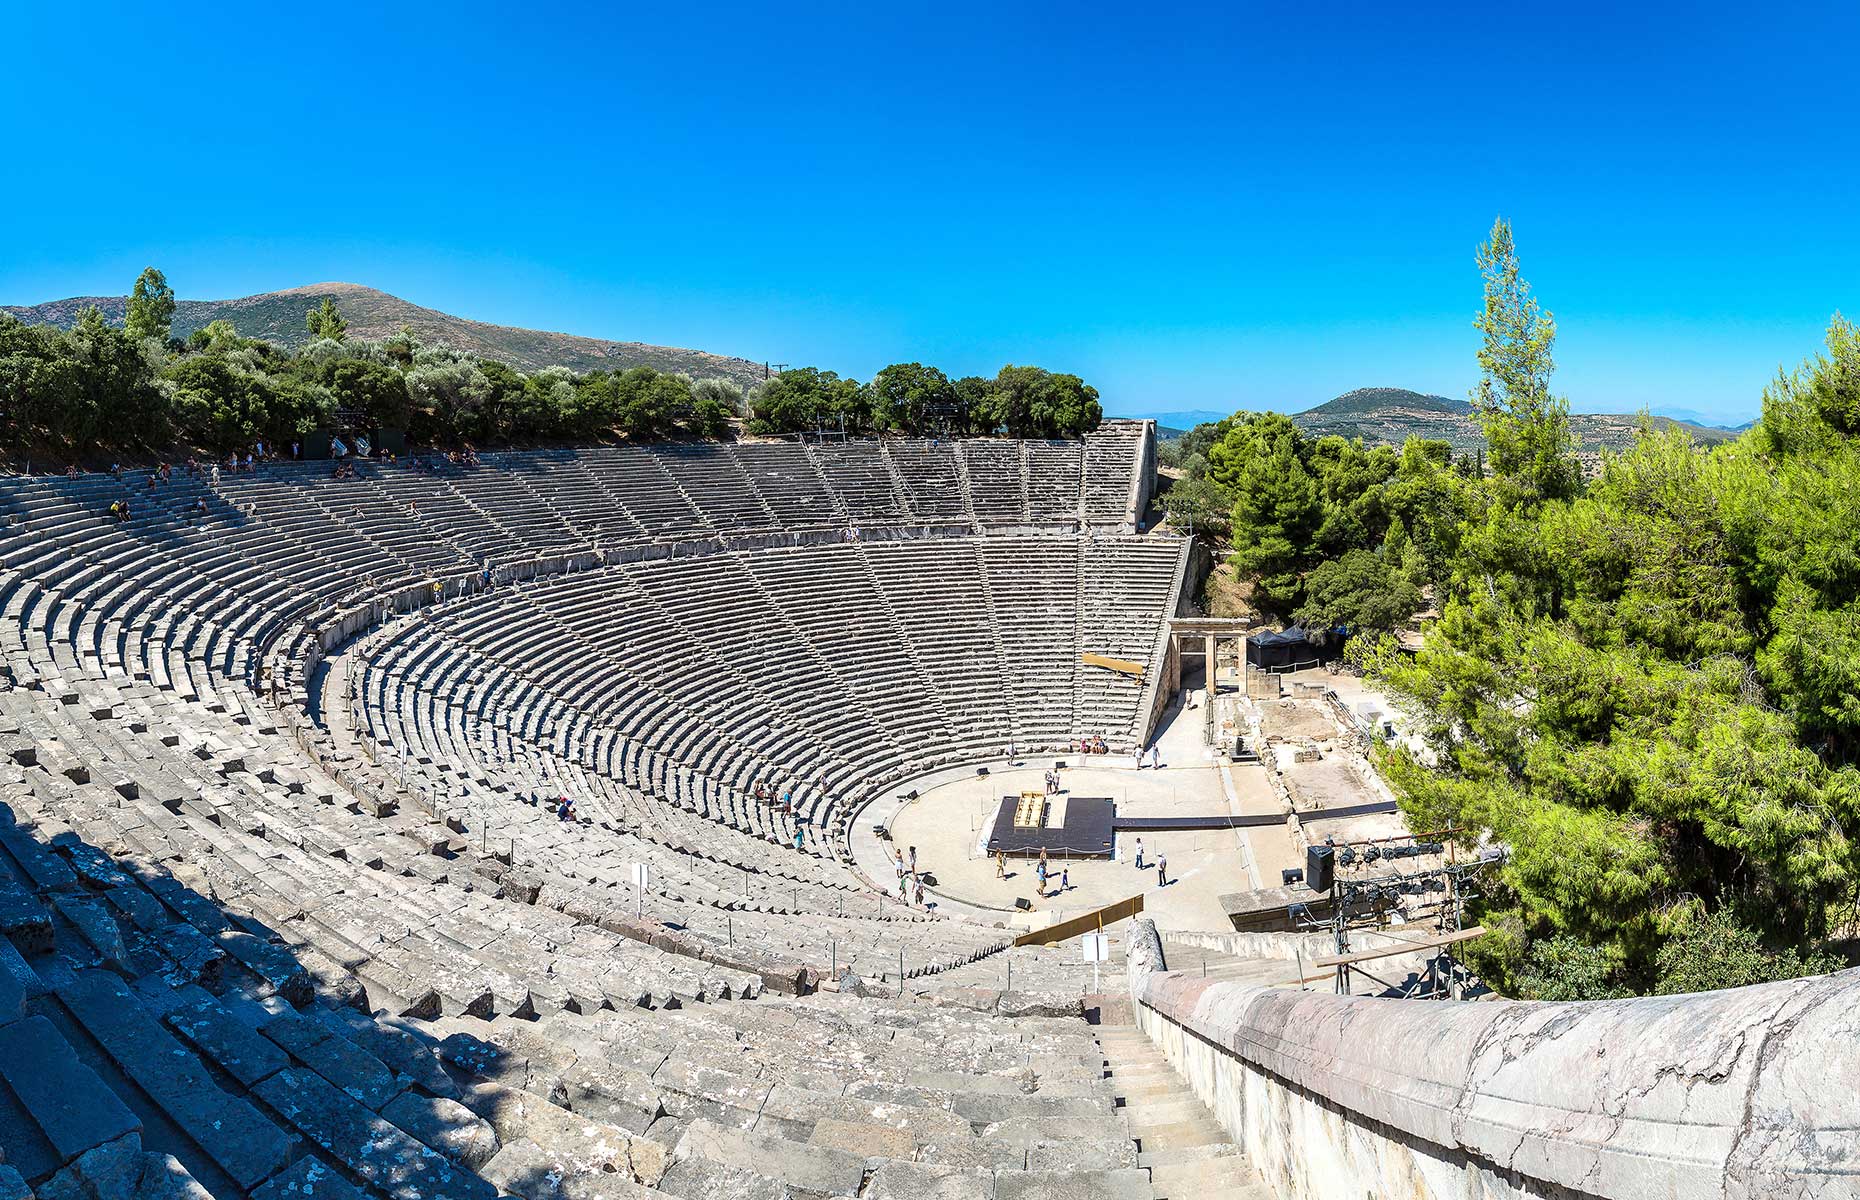 Epidaurus, Argolida (Images: S-F/Shutterstock)